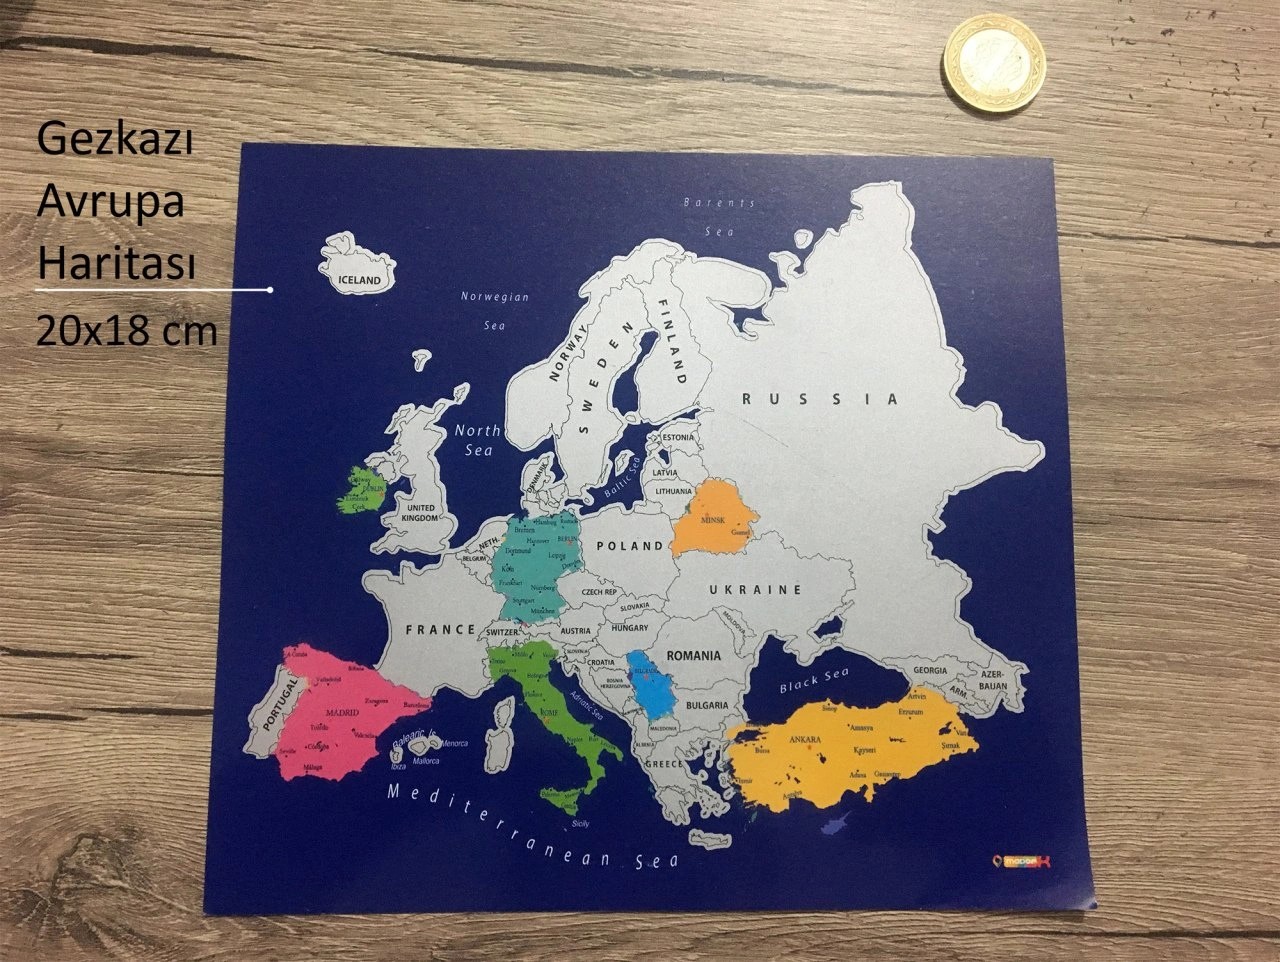 310 Gez-Kazı Avrupa Haritası - Kazınabilir Harita